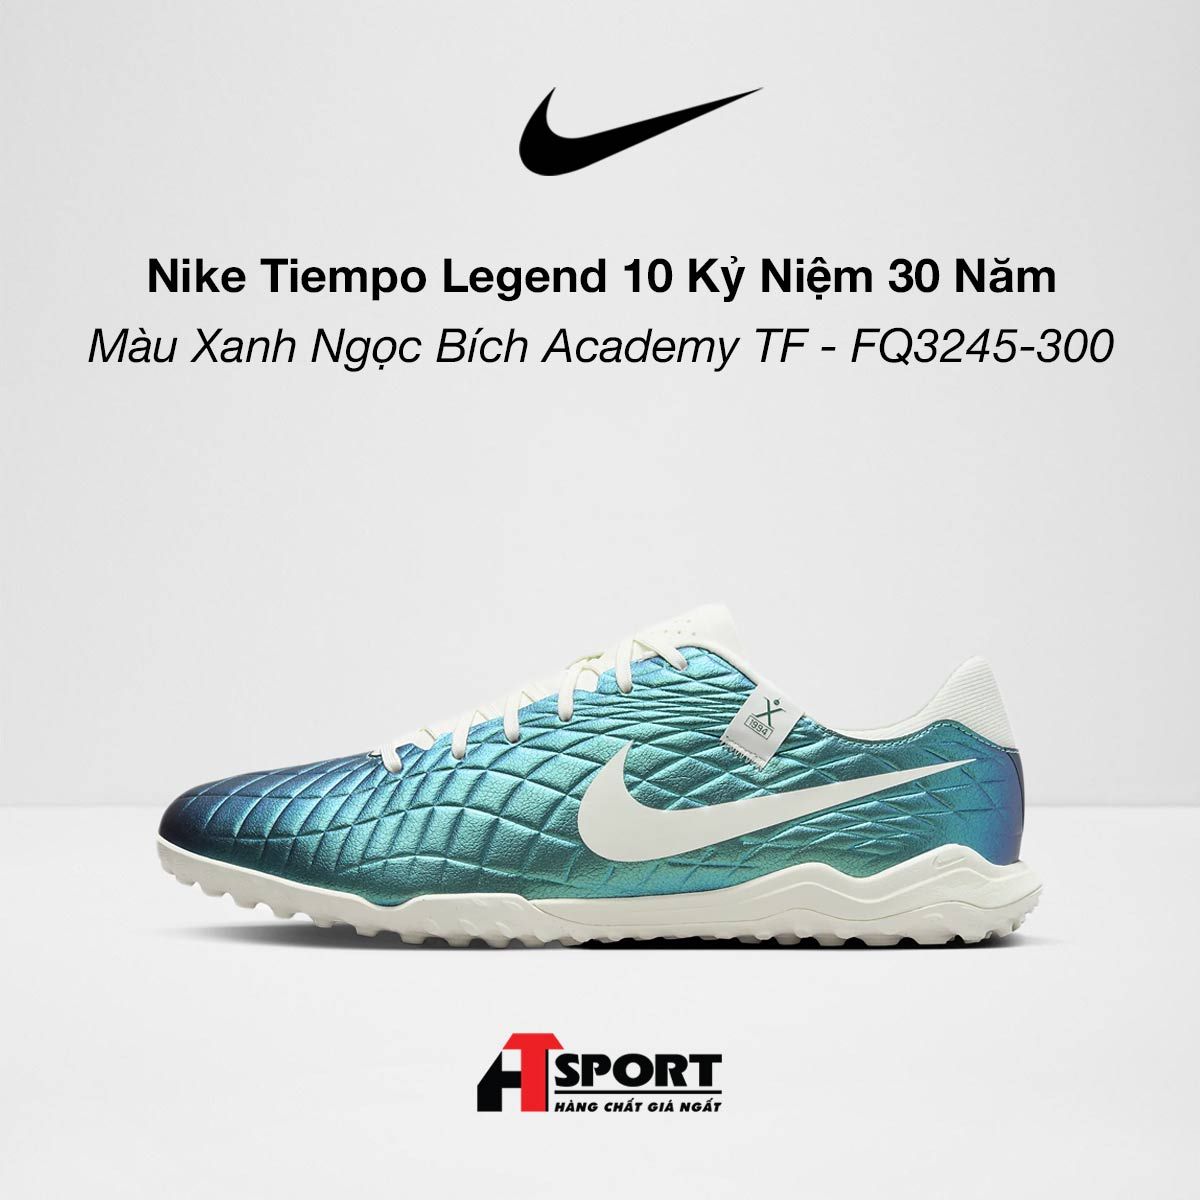  Nike Tiempo Legend 10 Bản Kỉ Niệm 30 Năm - Màu Xanh Ngọc Bích Academy TF - FQ3245-300 